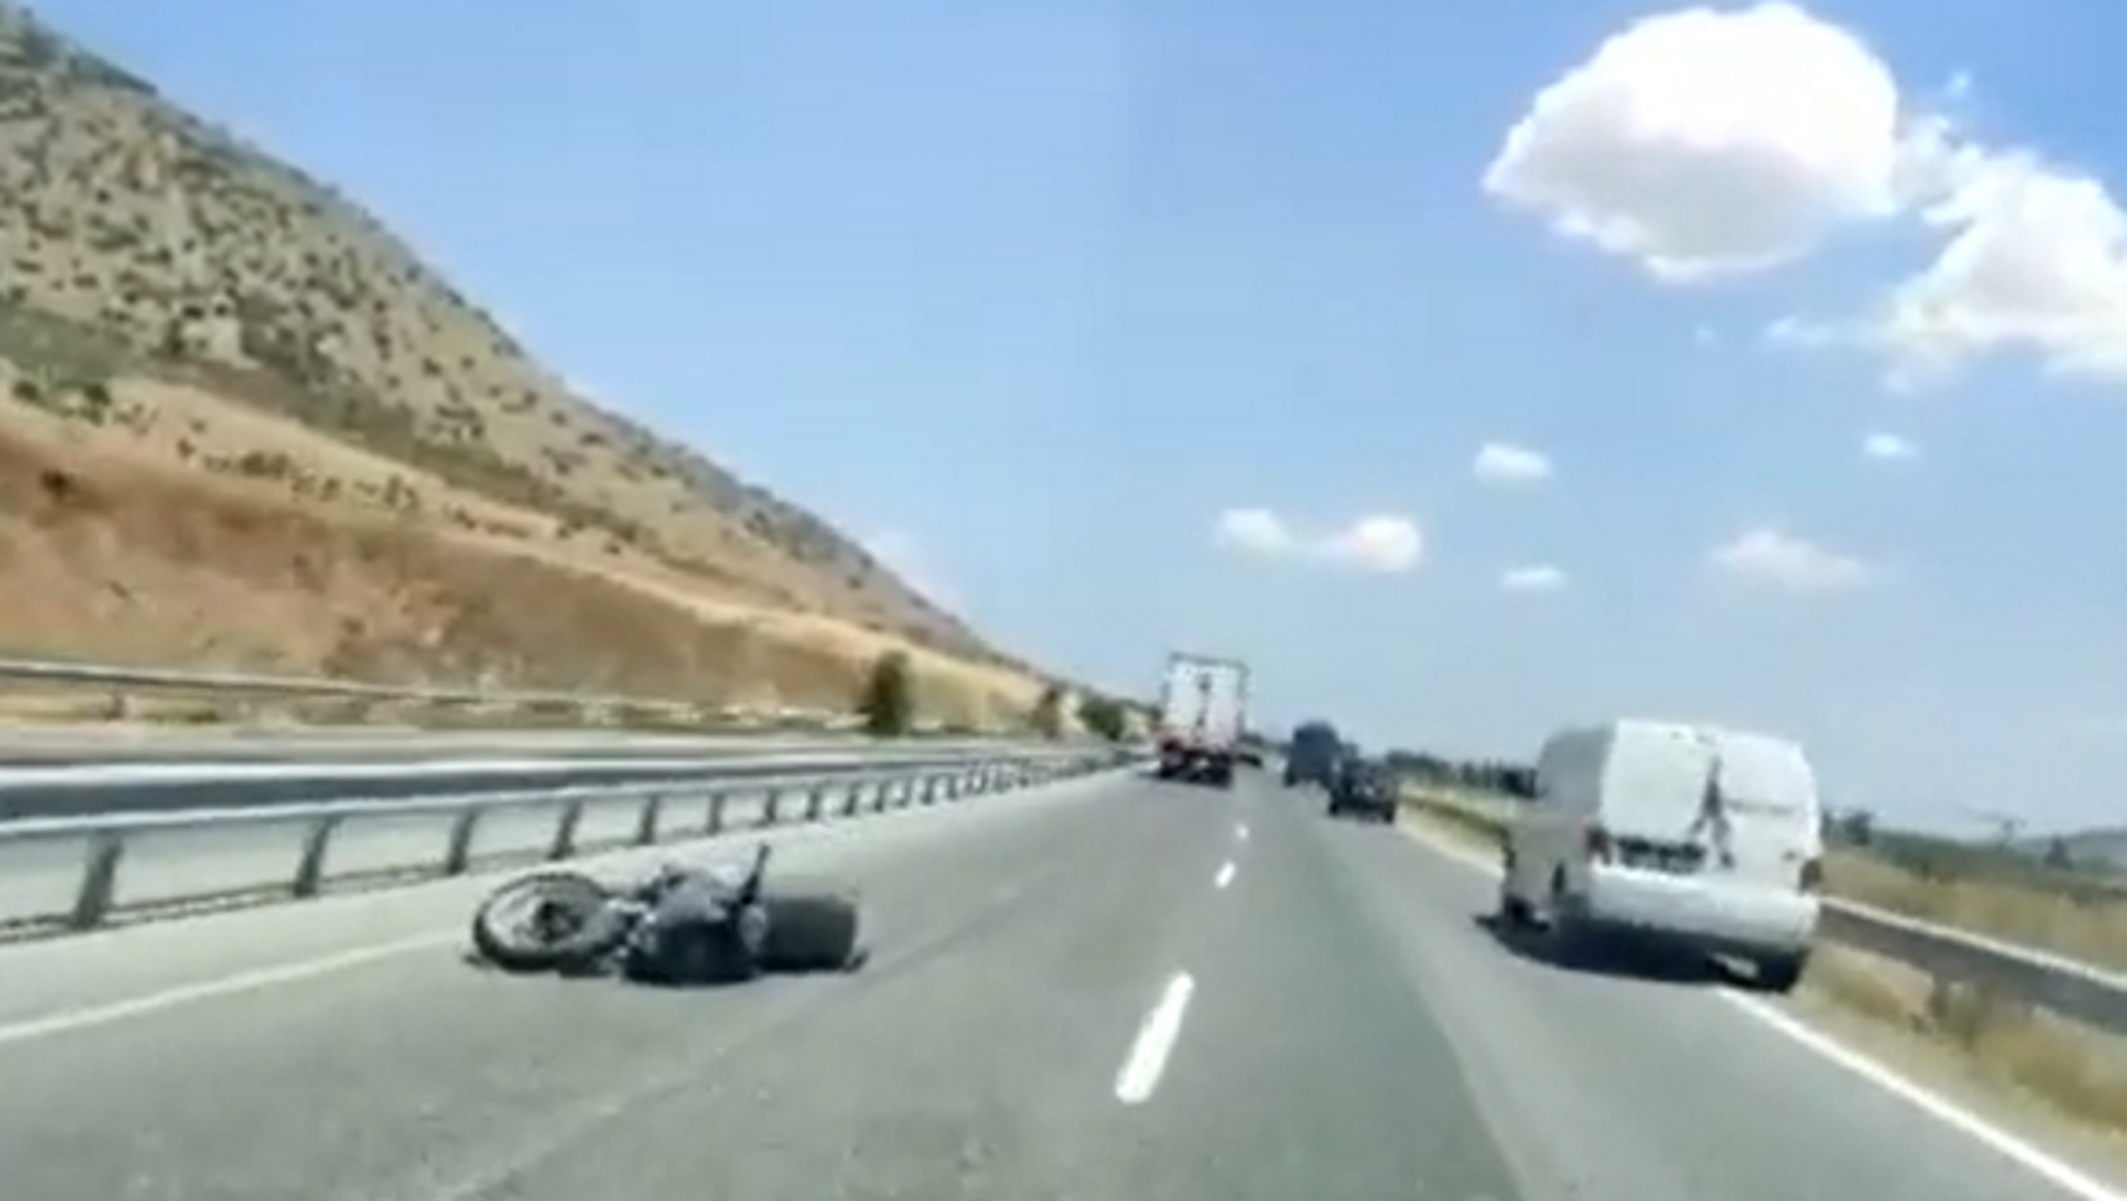 Σοκαριστικό τροχαίο στον δρόμο Λάρισας – Τρικάλων με έναν σοβαρά τραυματισμένο μοτοσικλετιστή